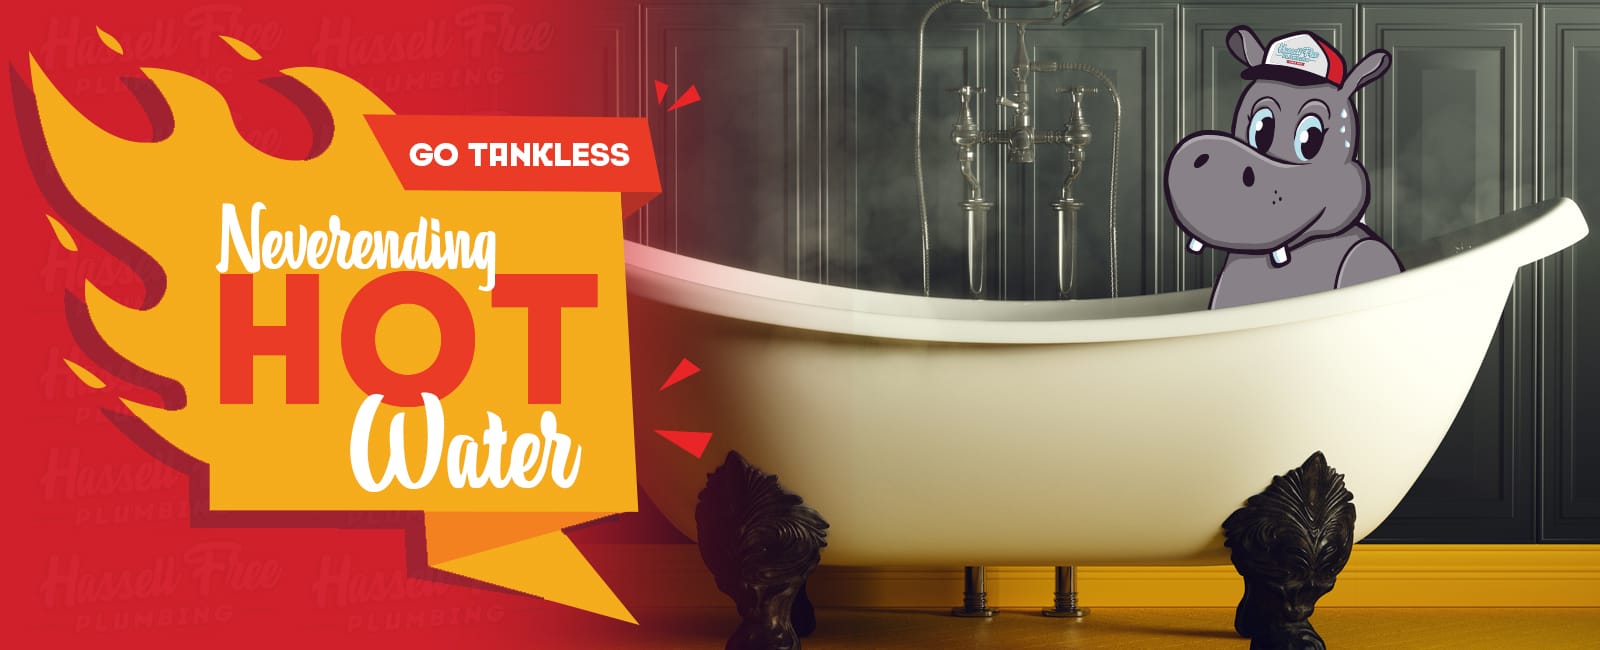 Neverending Hot Water. Go Tankless.